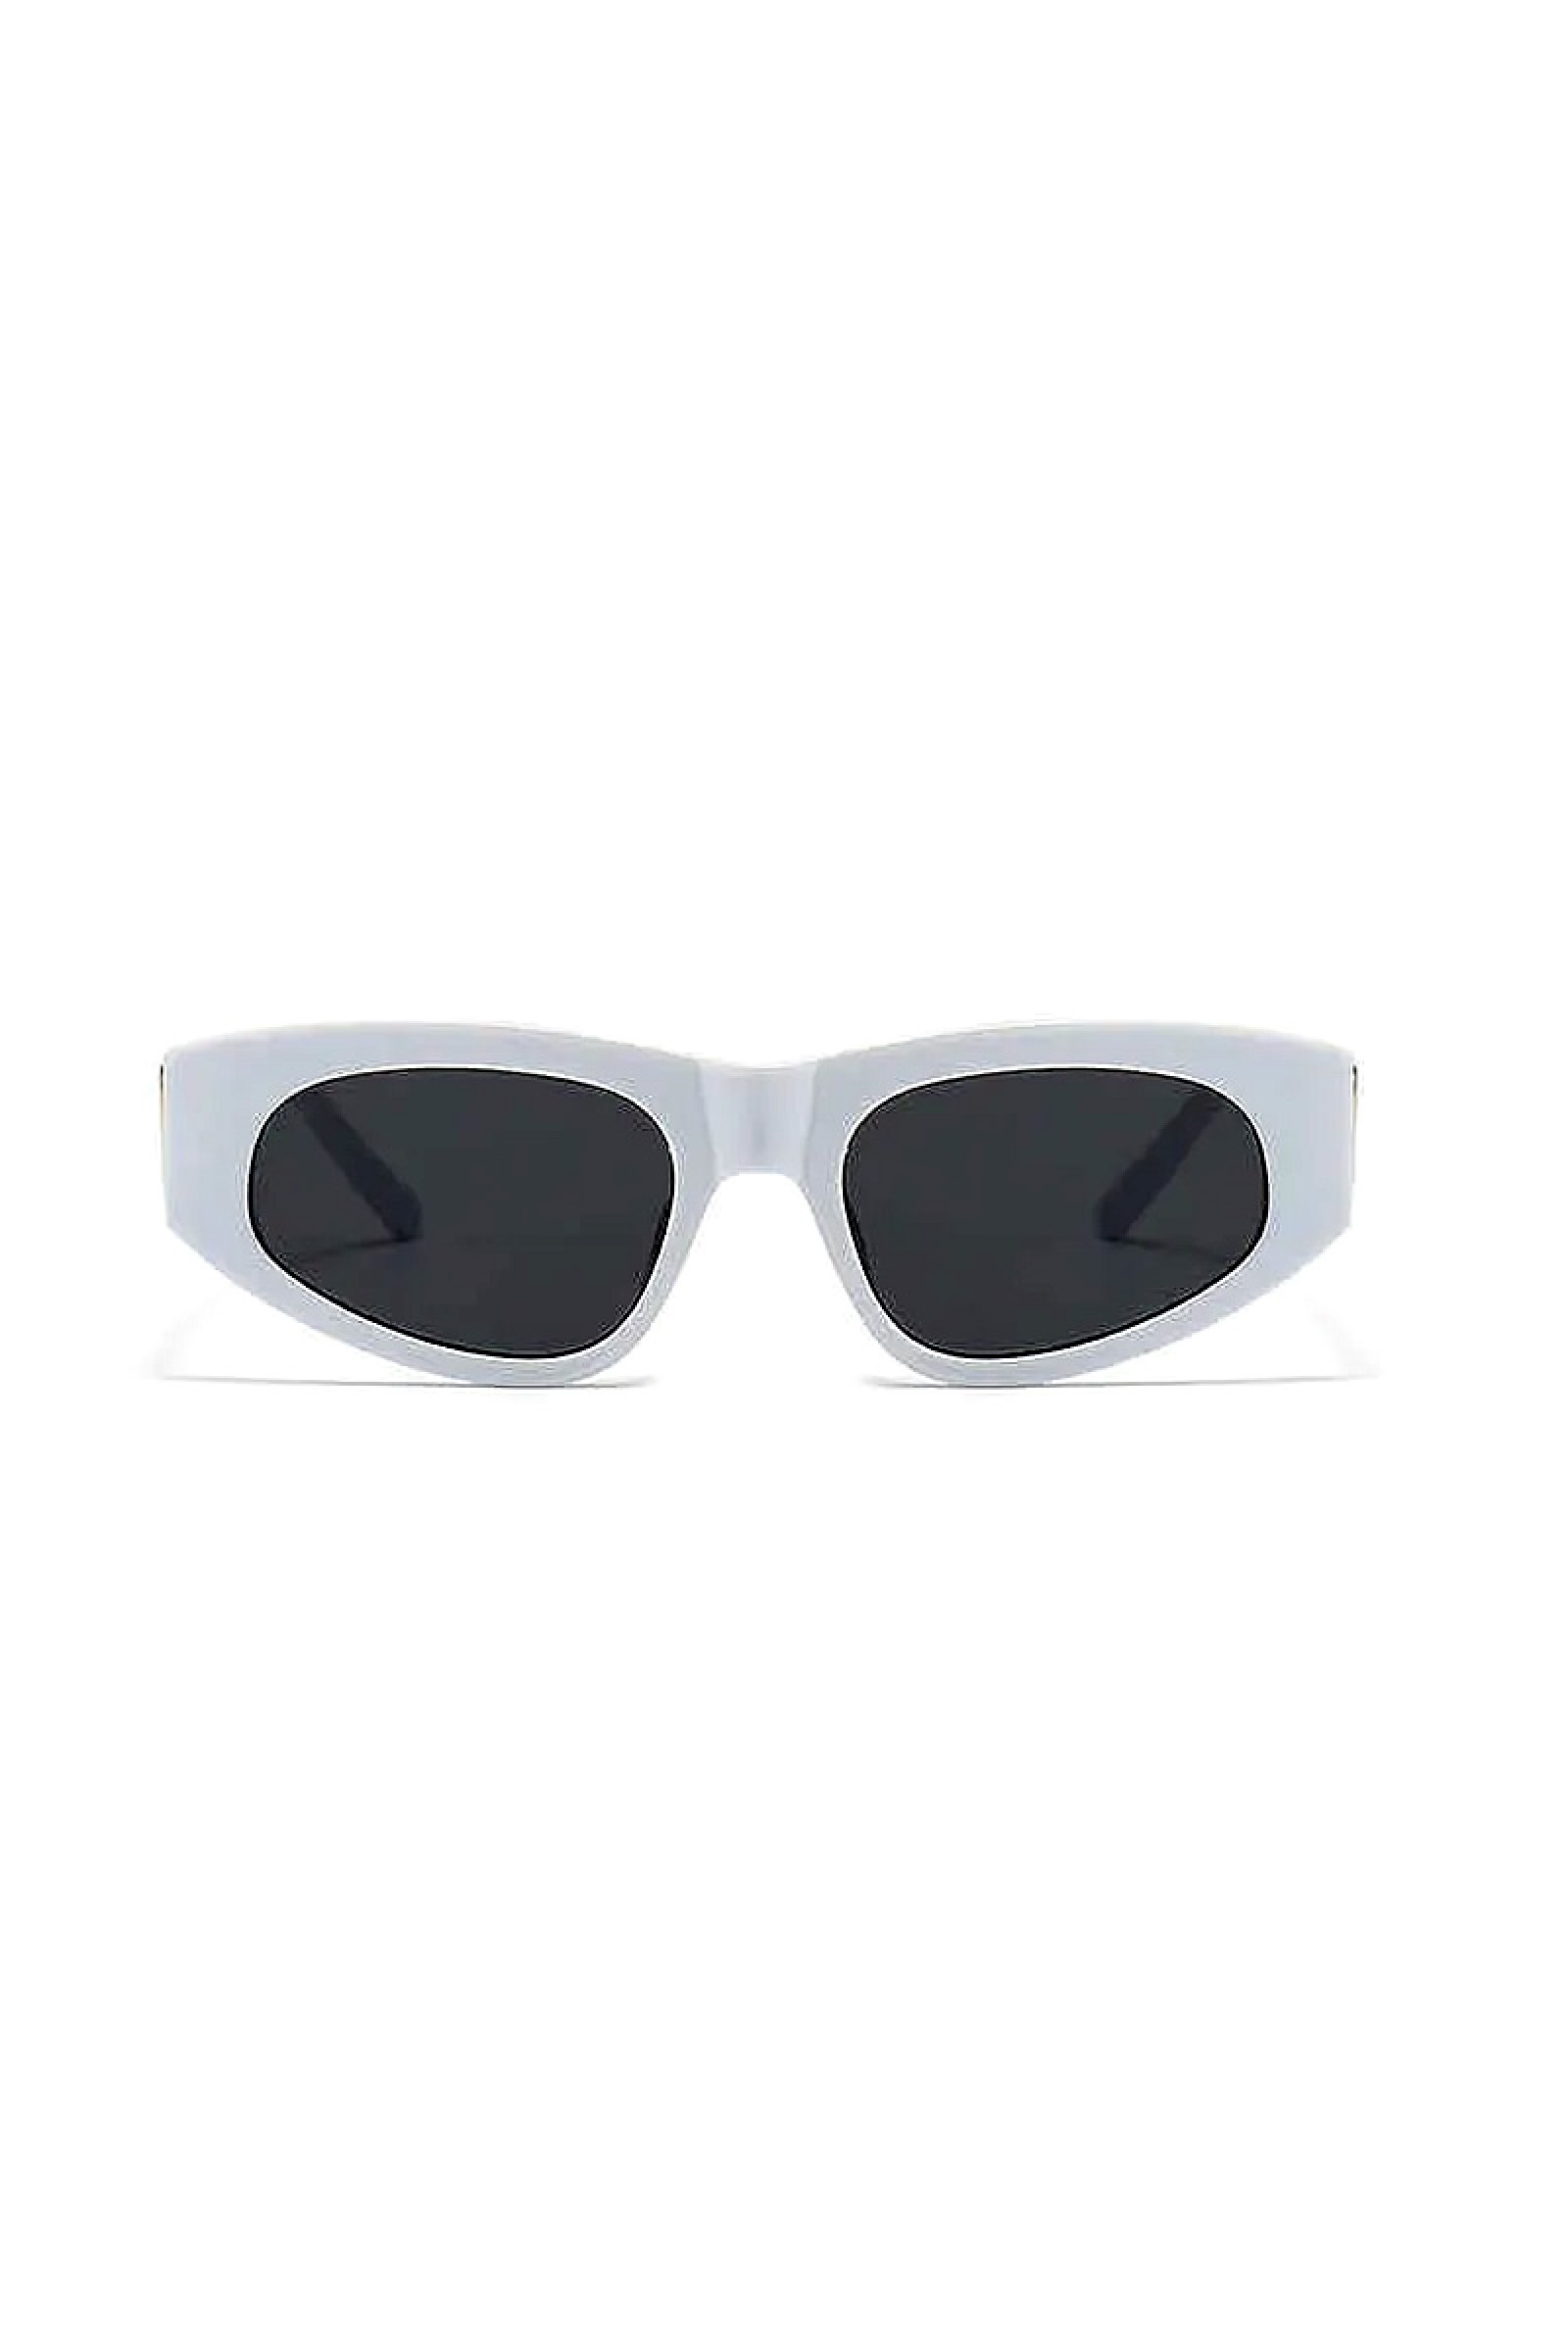 Γυναικεία Γυαλιά Ηλίου Λευκό Σκελετό Με μαύρους Φακούς